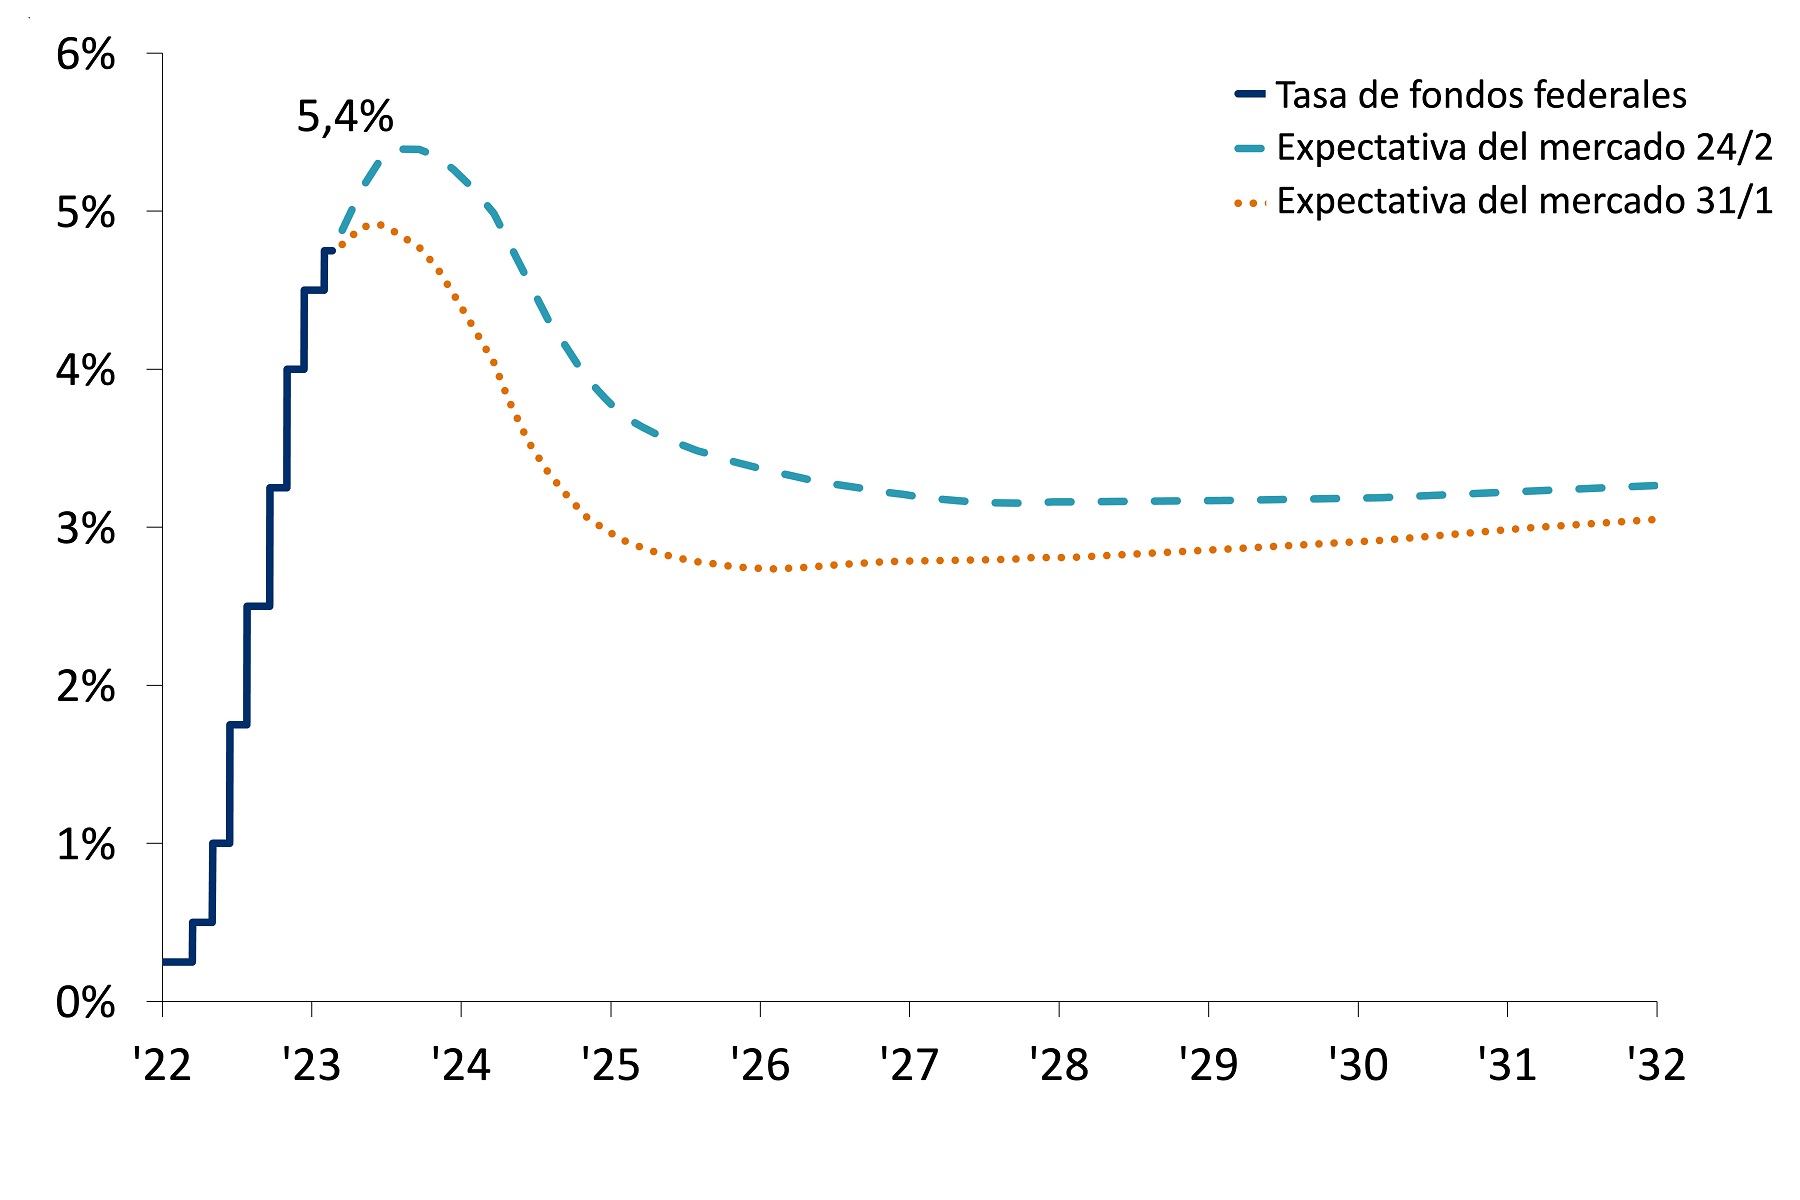 Tasa de fondos federales y expectativa del mercado (%)